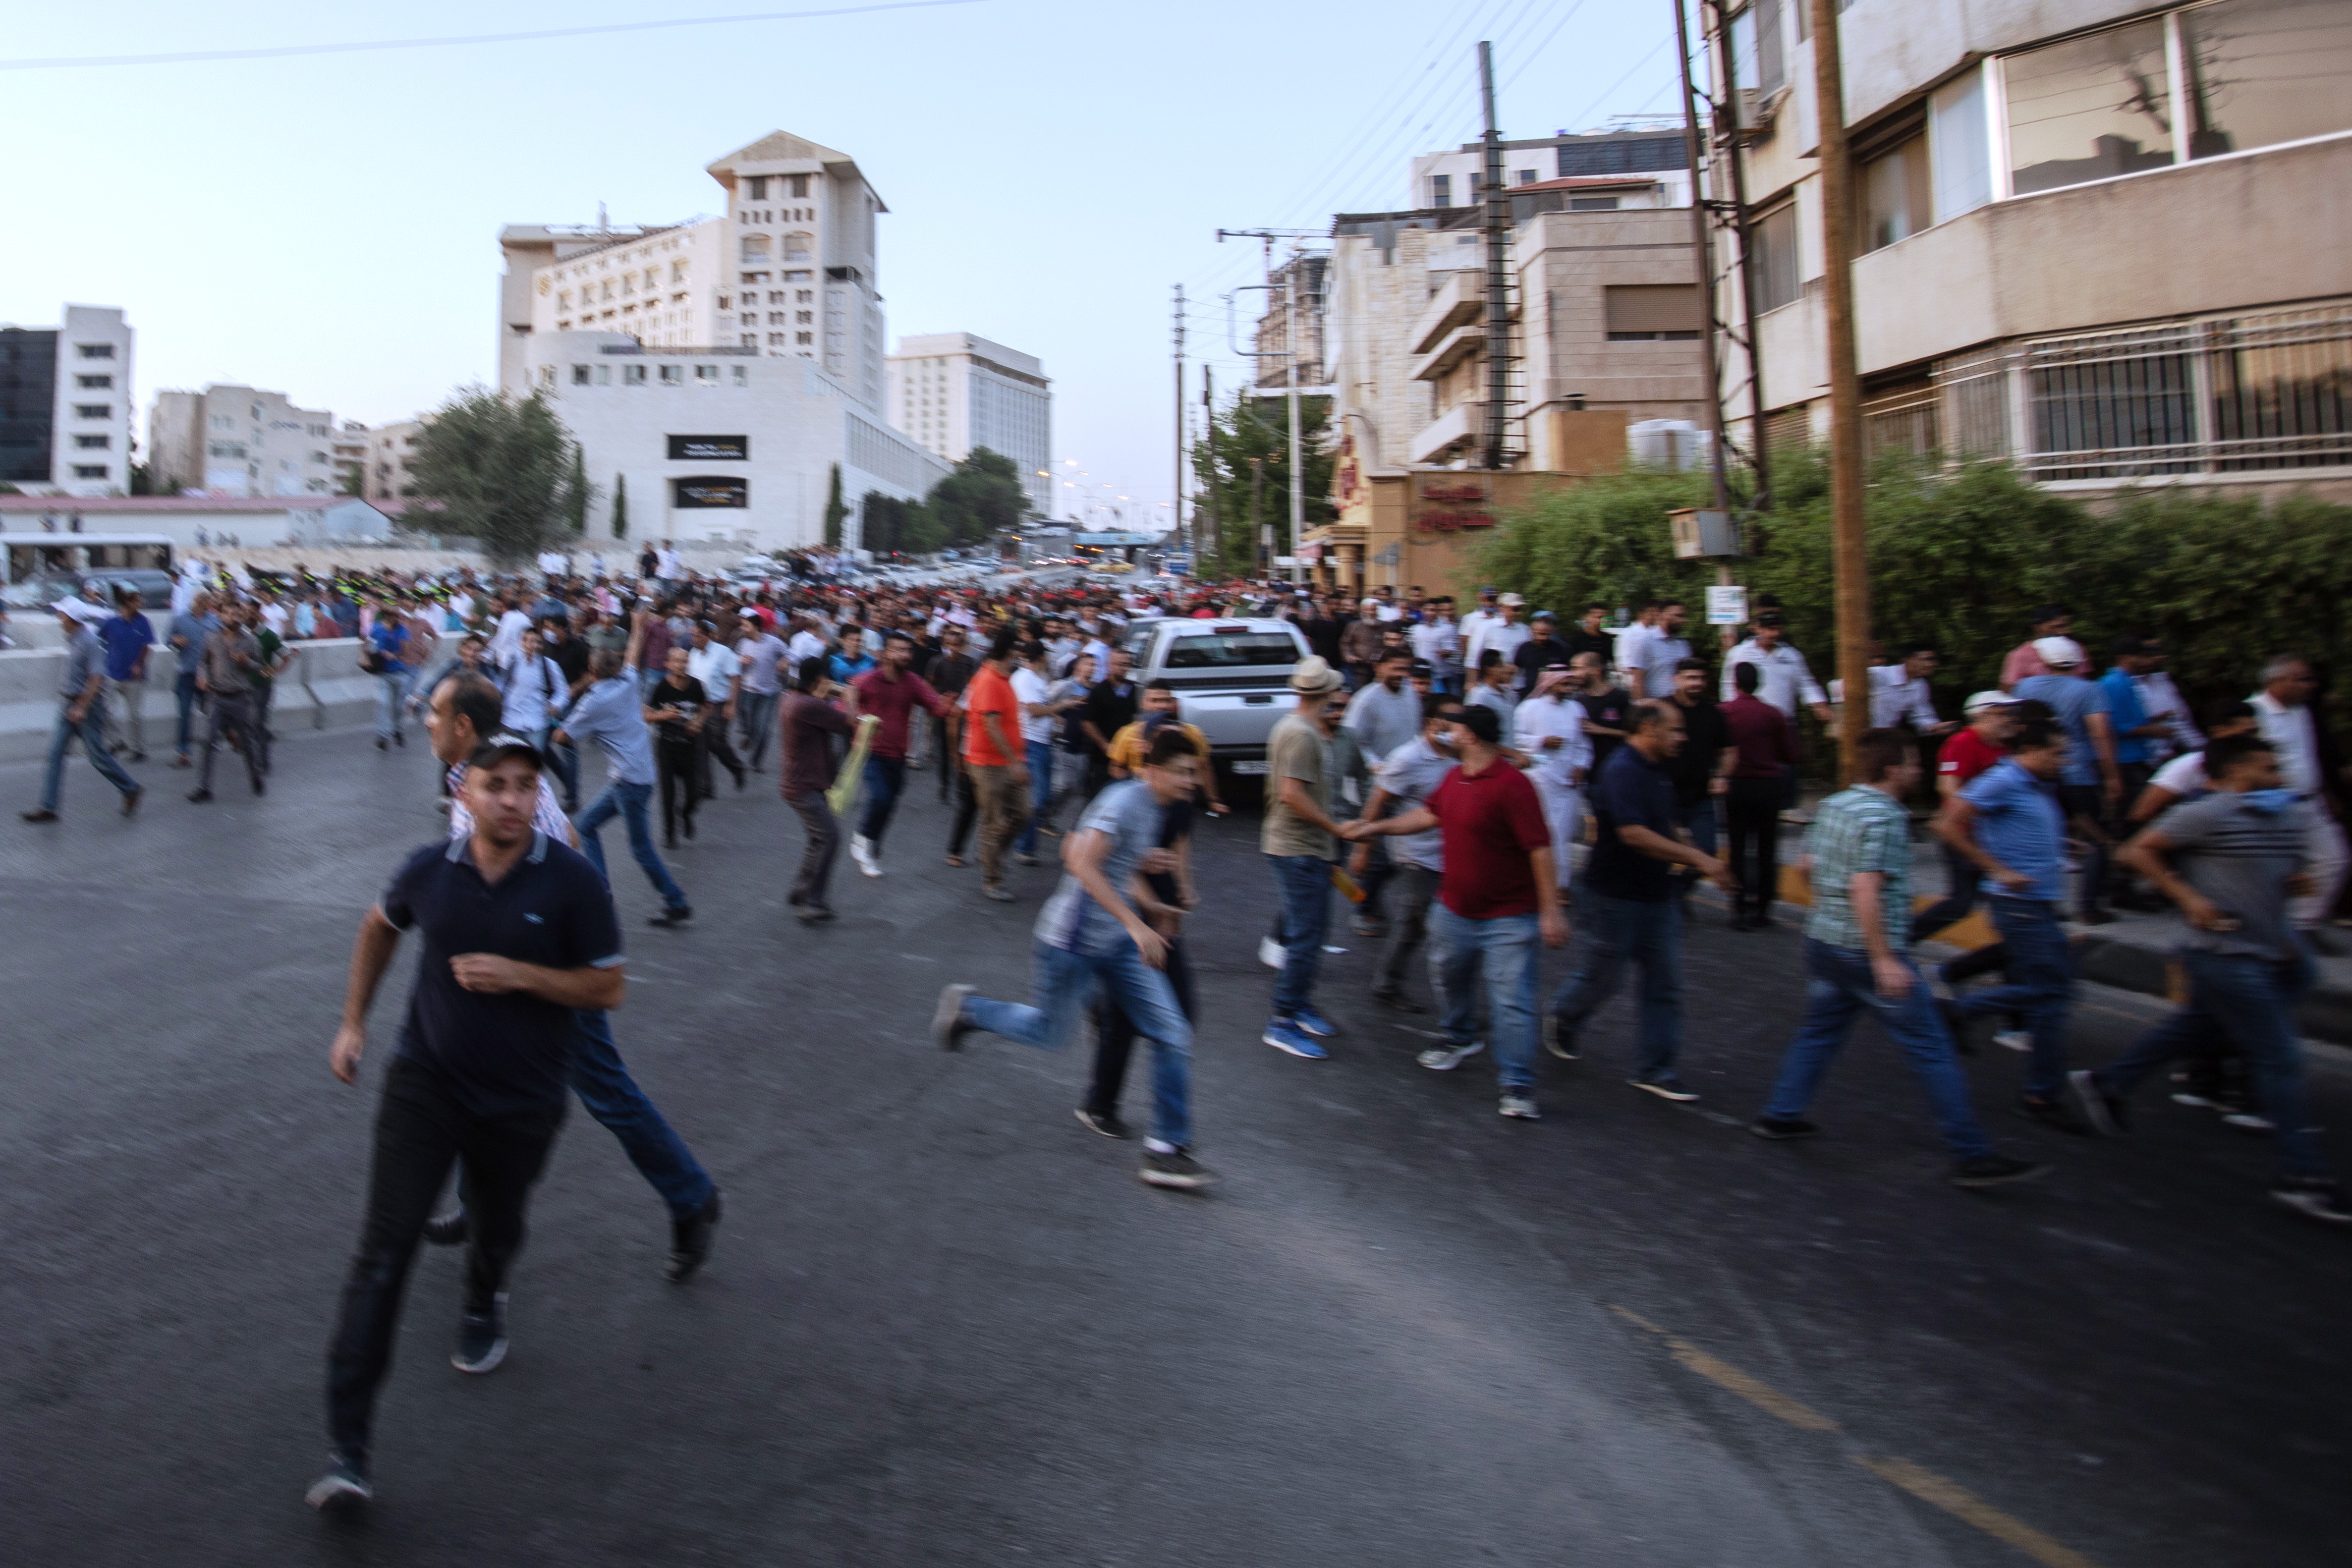 قوات الأمن تمنع المتظاهرين من الوصول إلى المباني الحكومية 29 / 07 / 2020 احتجاجا على قرار حل نقابة المعلمين واعتقال قادتها. (photo: Sherbel Dissi)